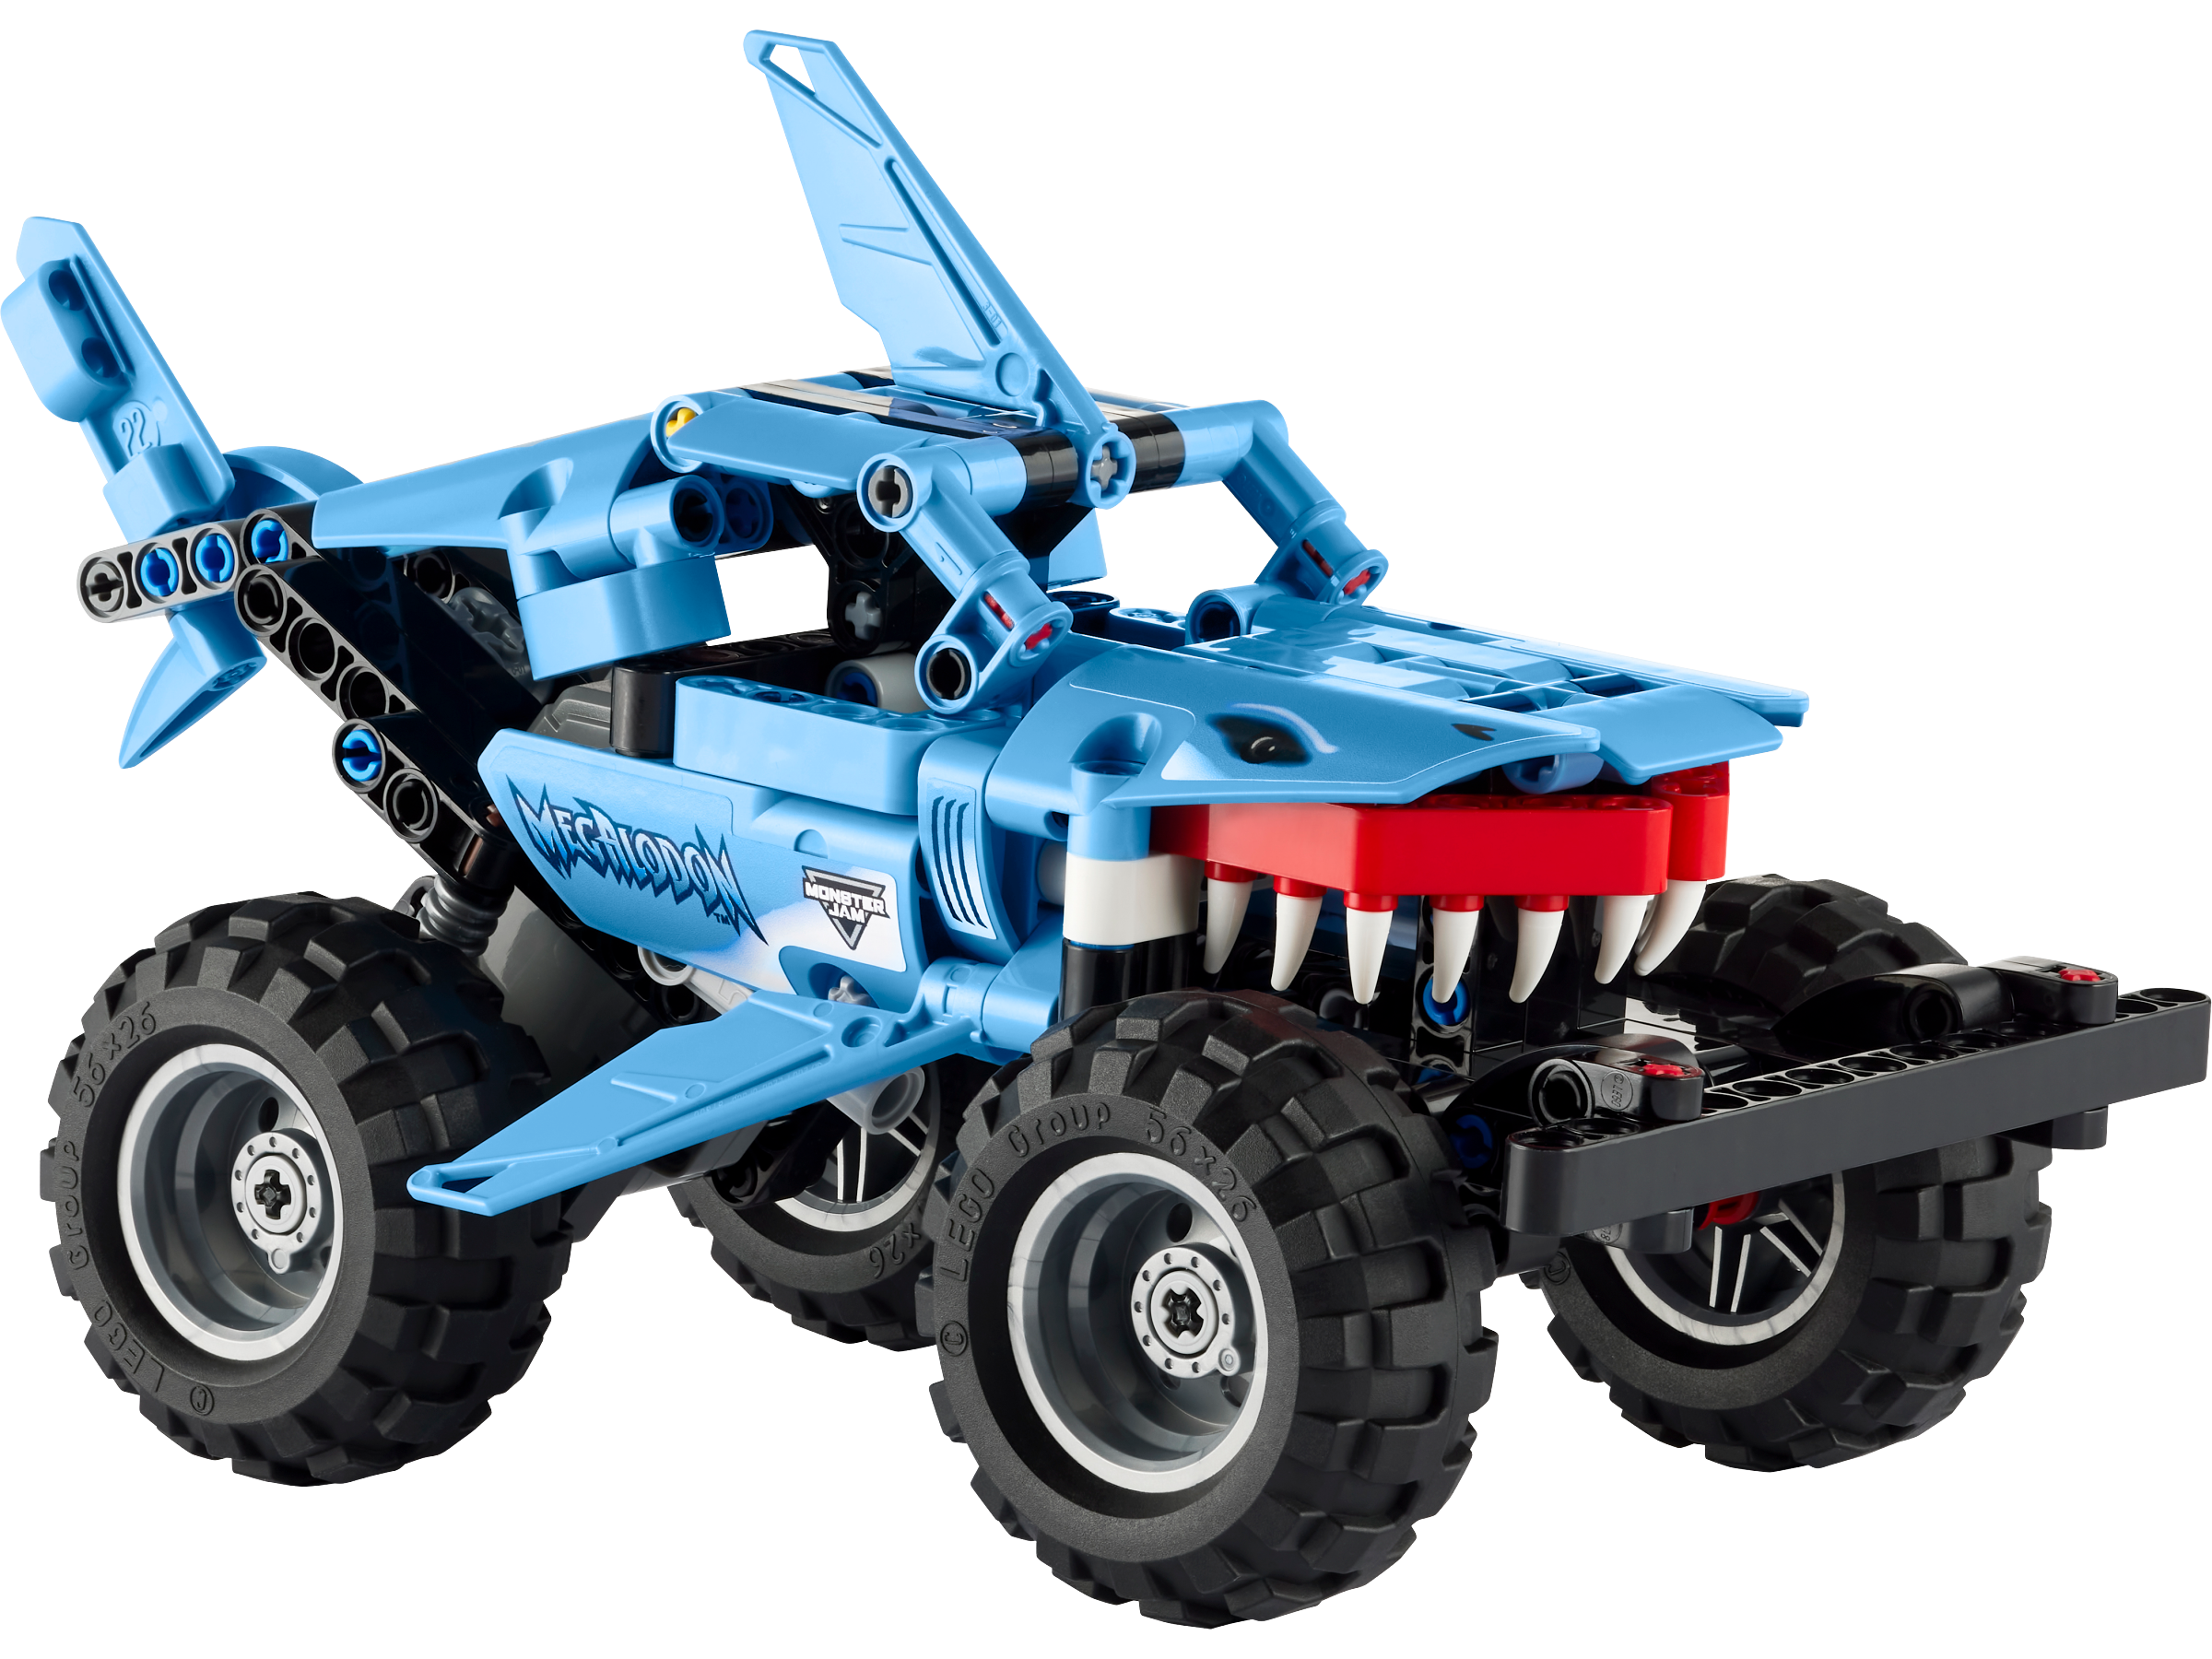 element Achtervolging roze Technic™ | Mechanical Toys & Building Sets | Official LEGO® Shop US